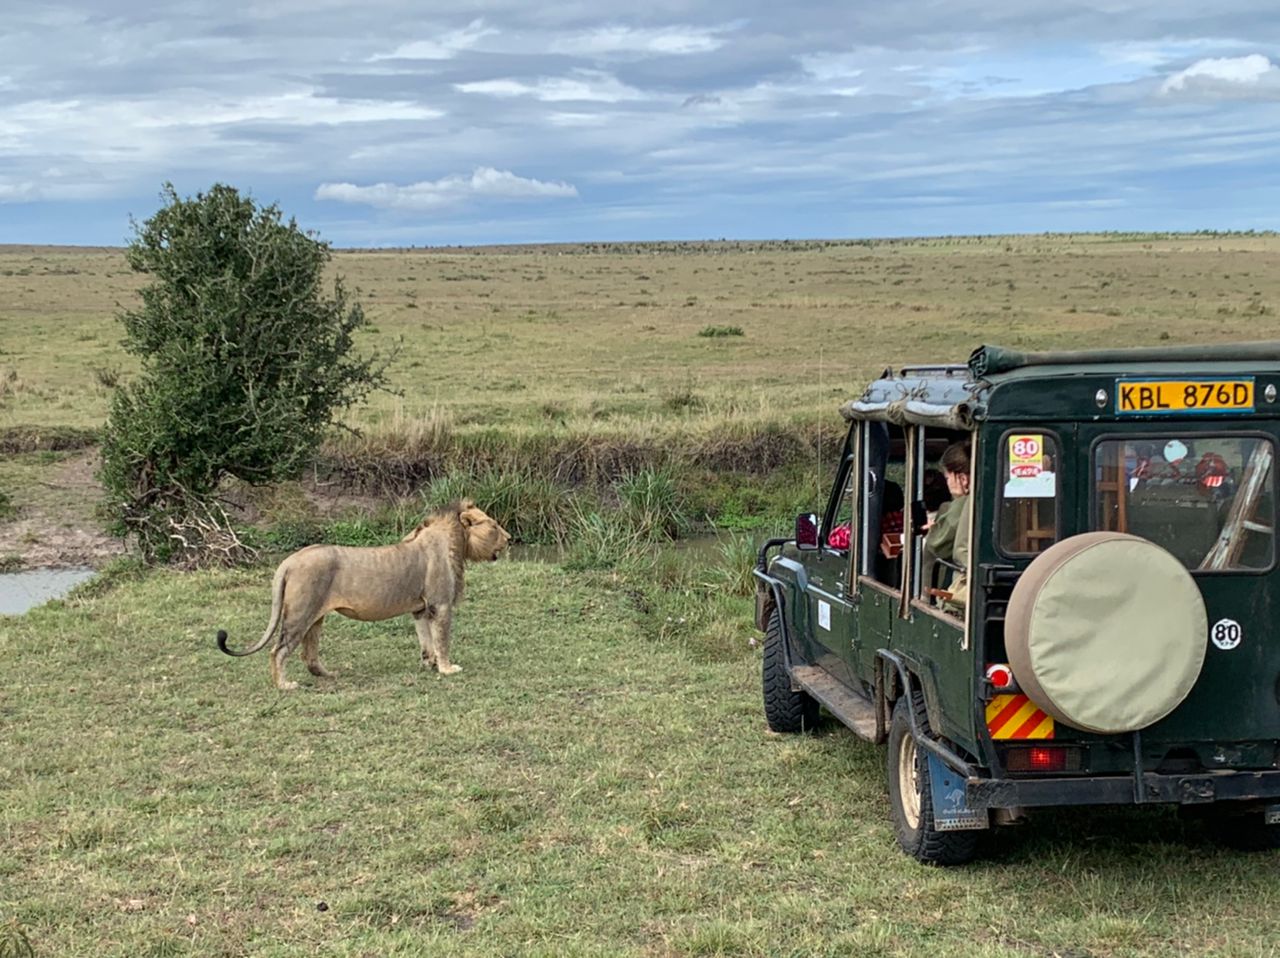 Safari Kenya with 4x4 jeep